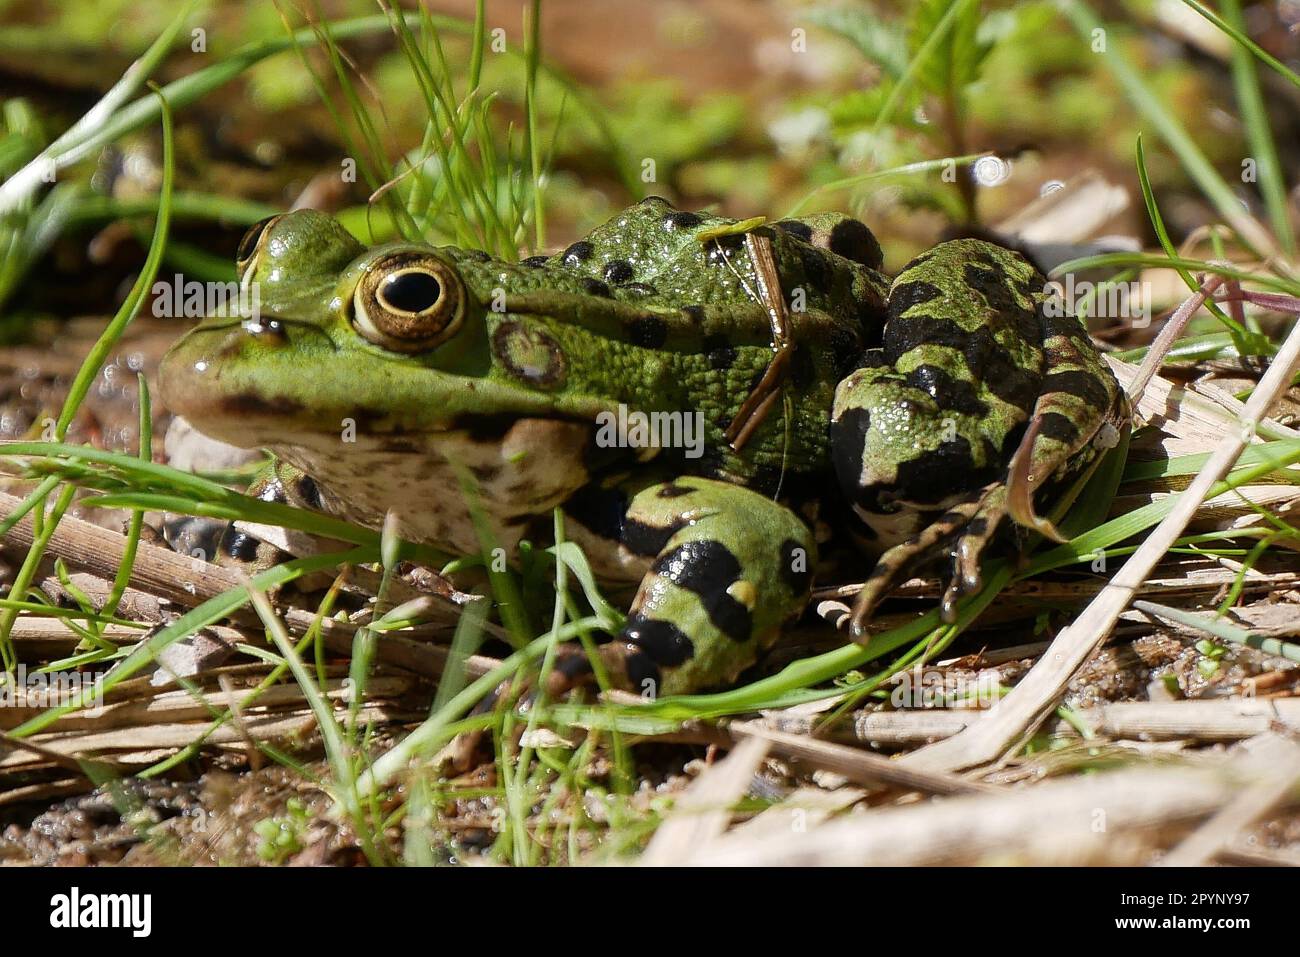 Eine schöne Nahaufnahme einer Amphibien in ihrer natürlichen Umgebung, die ihre lebendige grüne Haut, die gewölbten Augen und die breiten, gewebten Füße zeigt Stockfoto